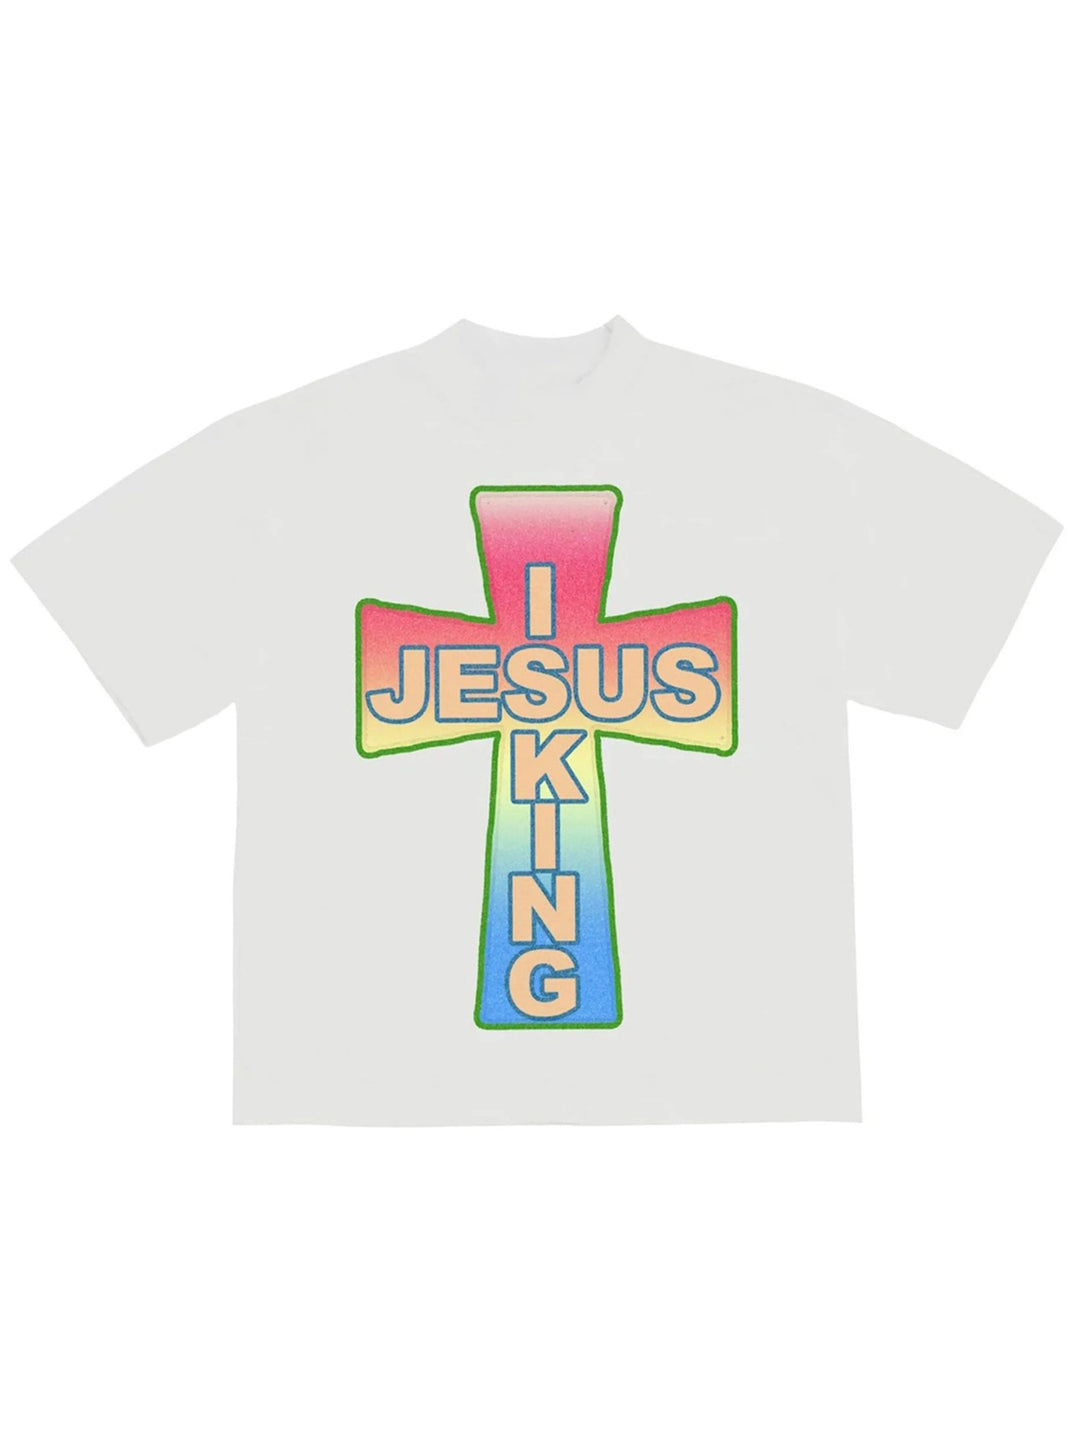 Kanye West AWGE for JIK Cross T-shirt White Prior